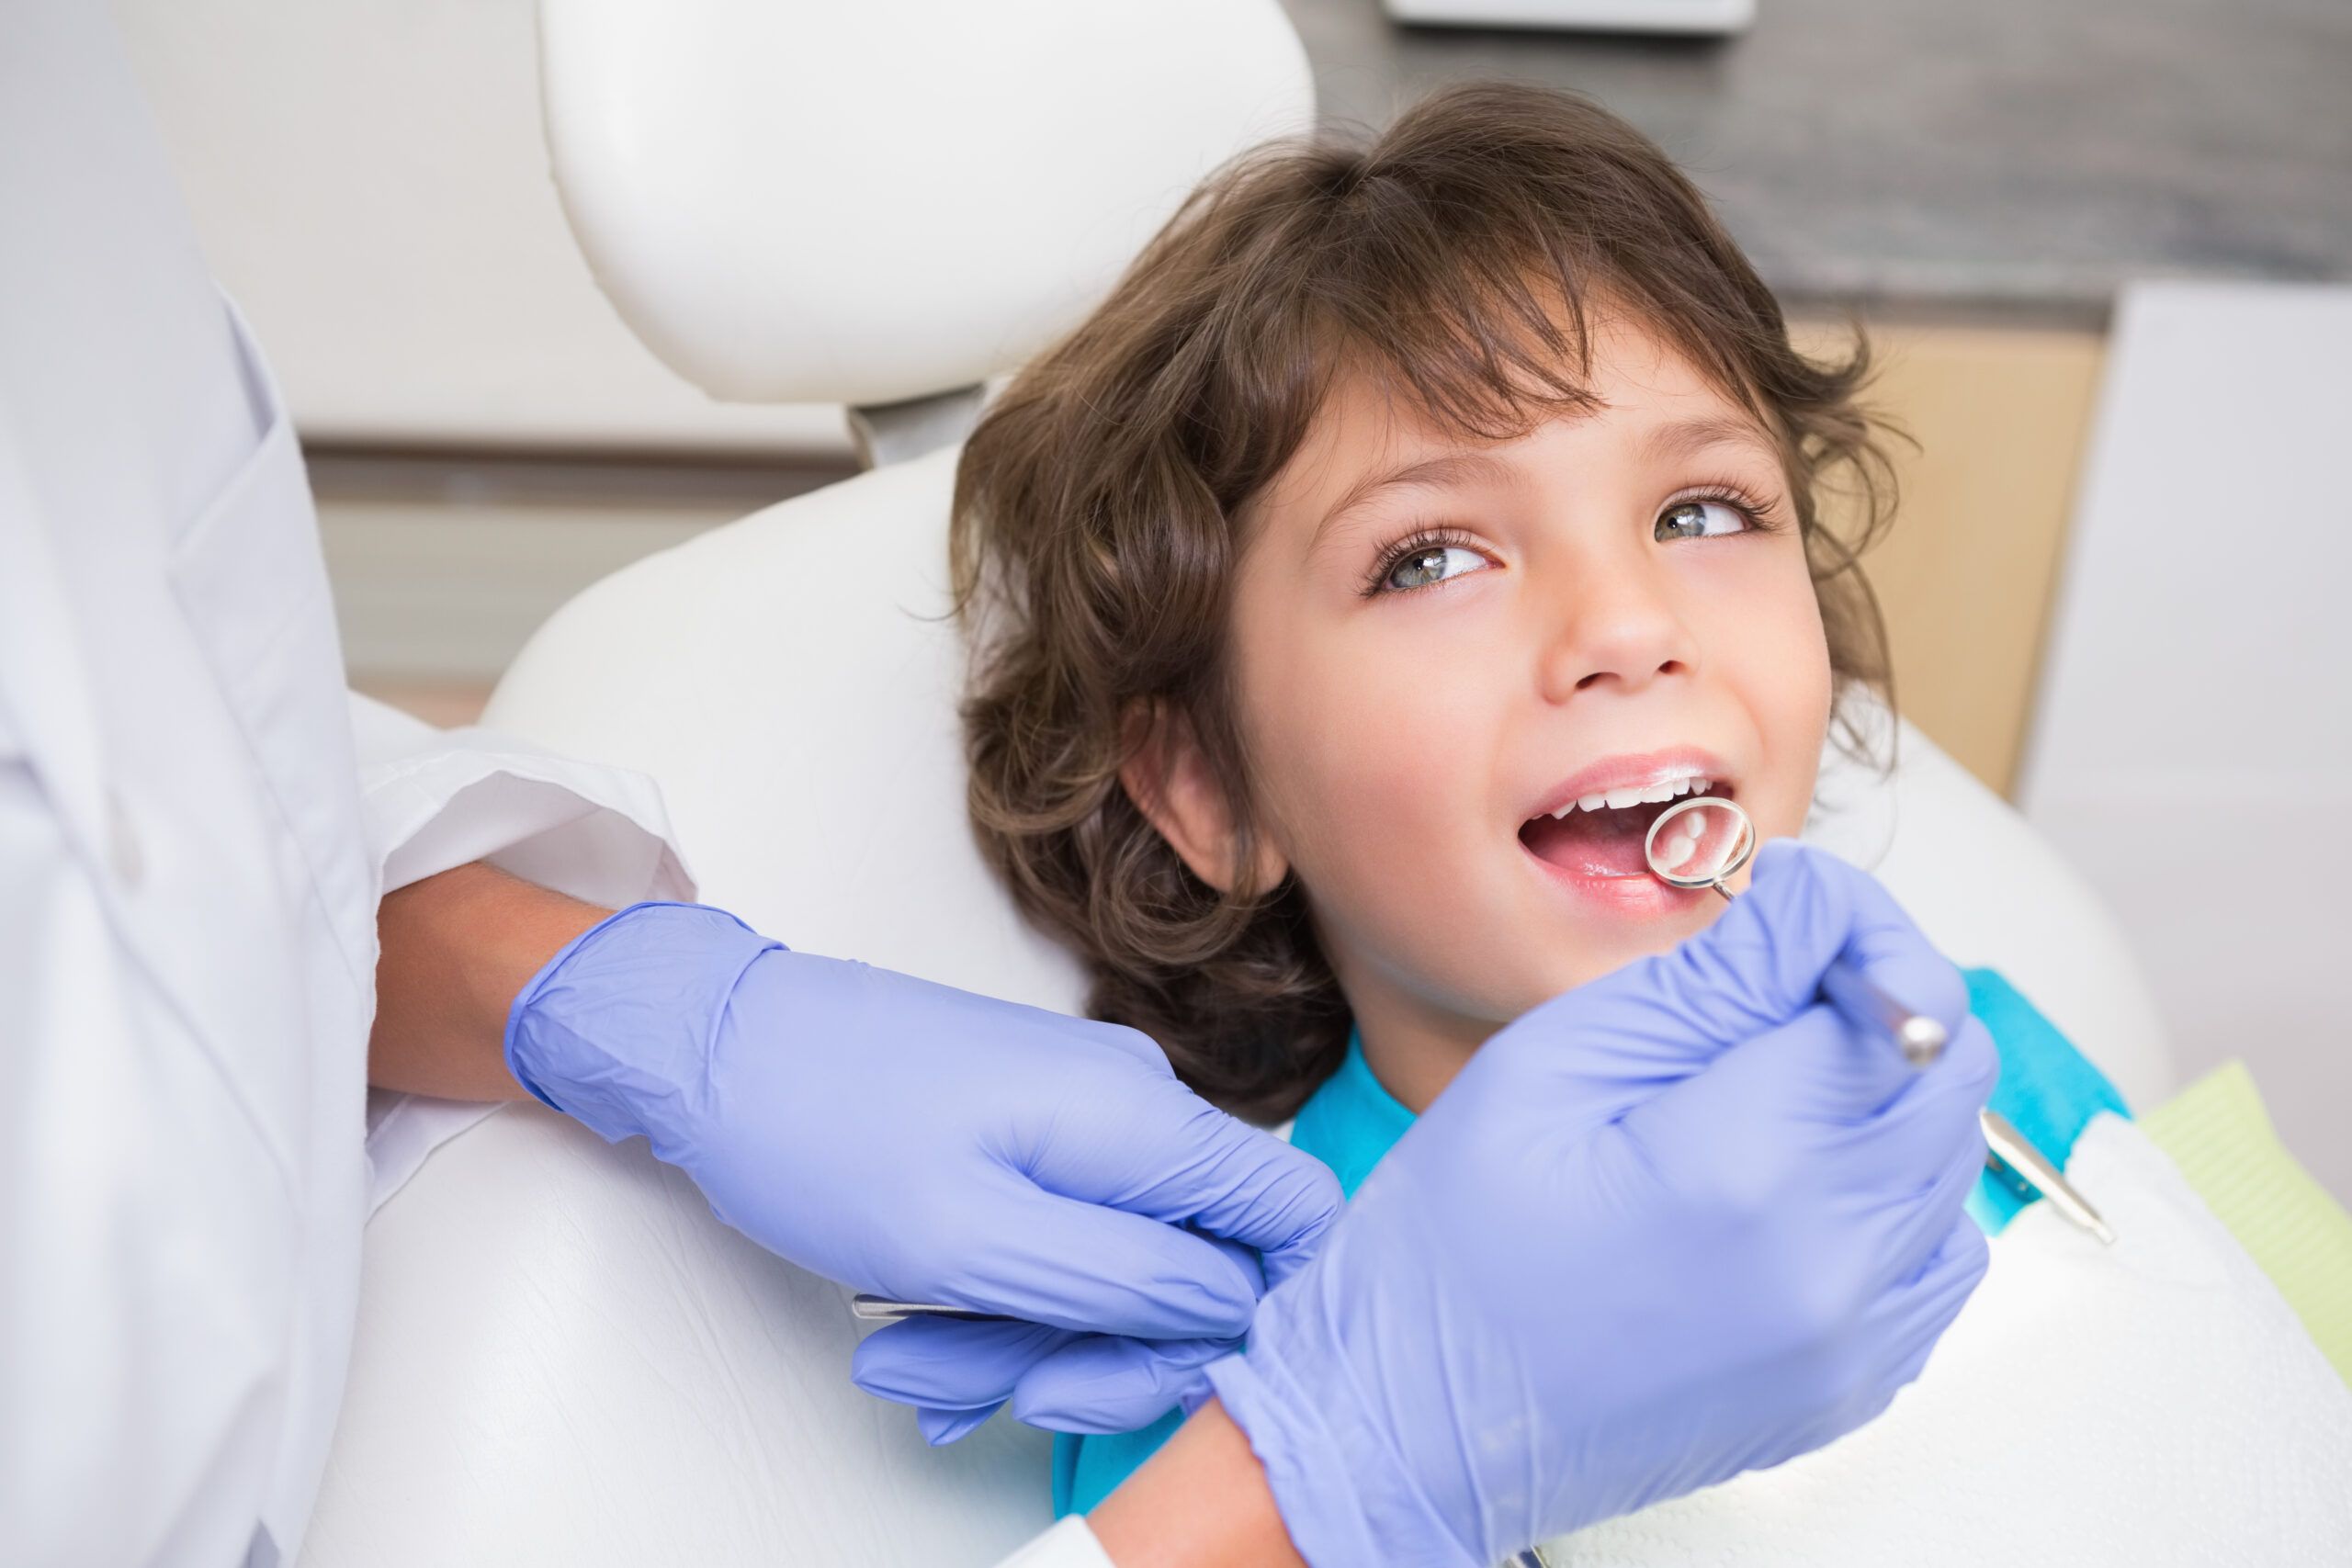 ¿Qué es la odontología preventiva?